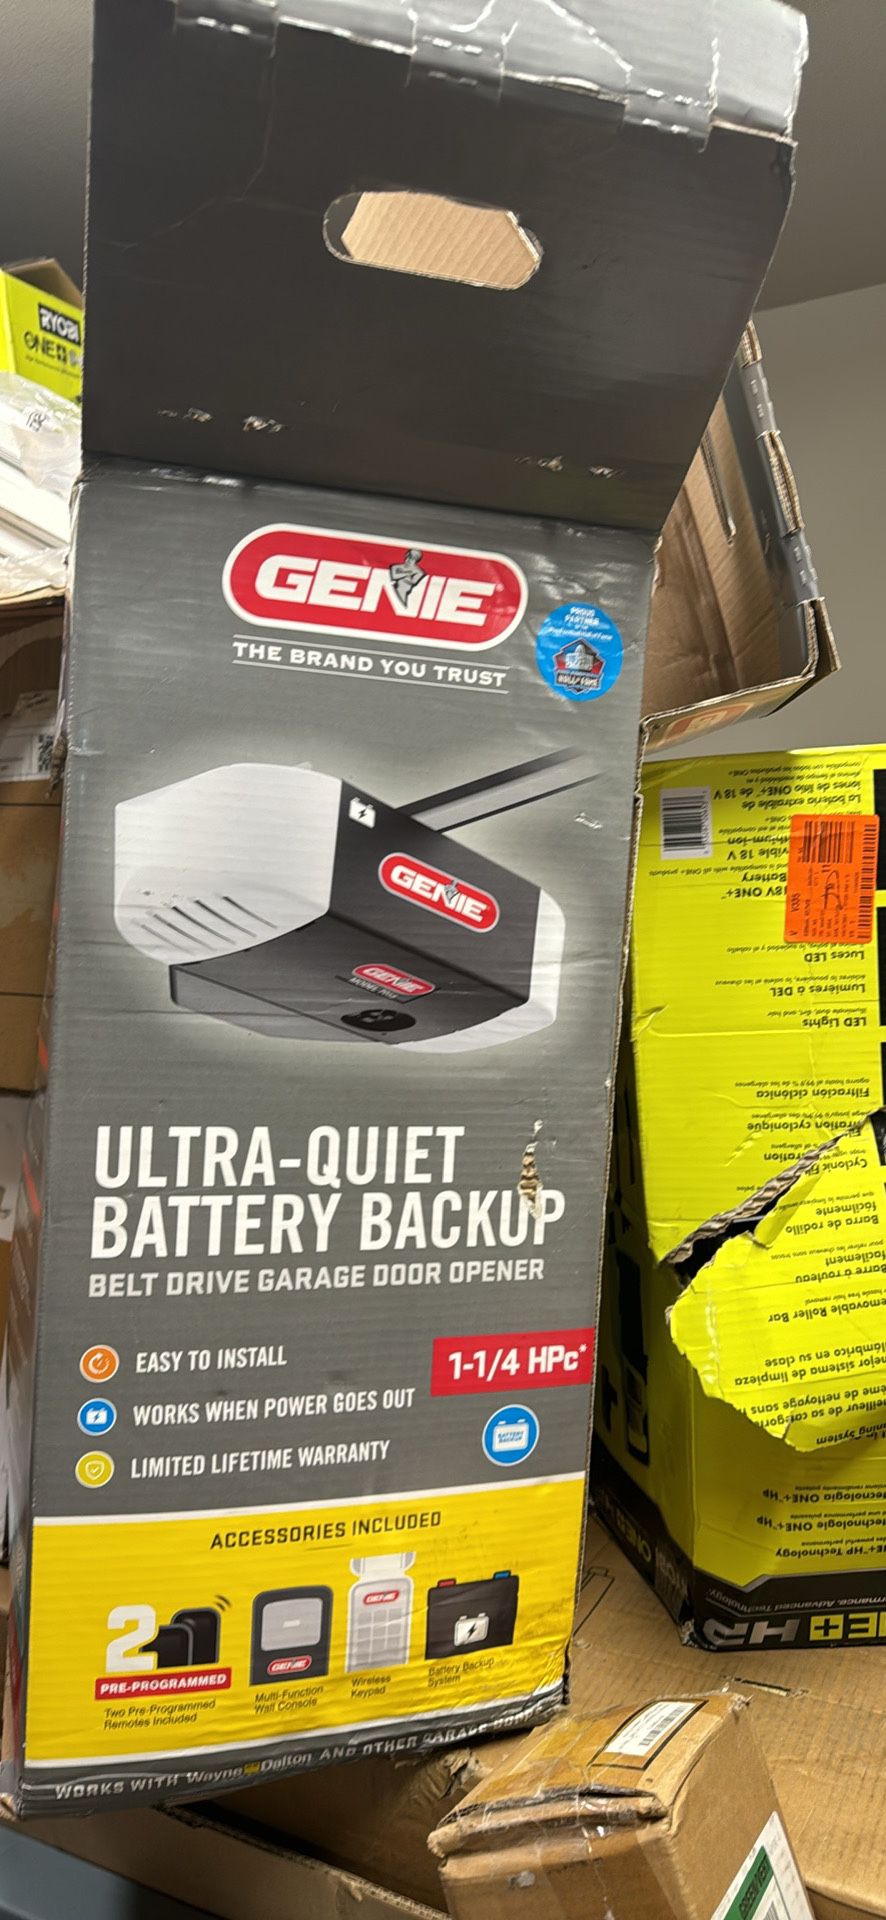 Genie ultra quiet garage door opener - belt drive -  battery backup